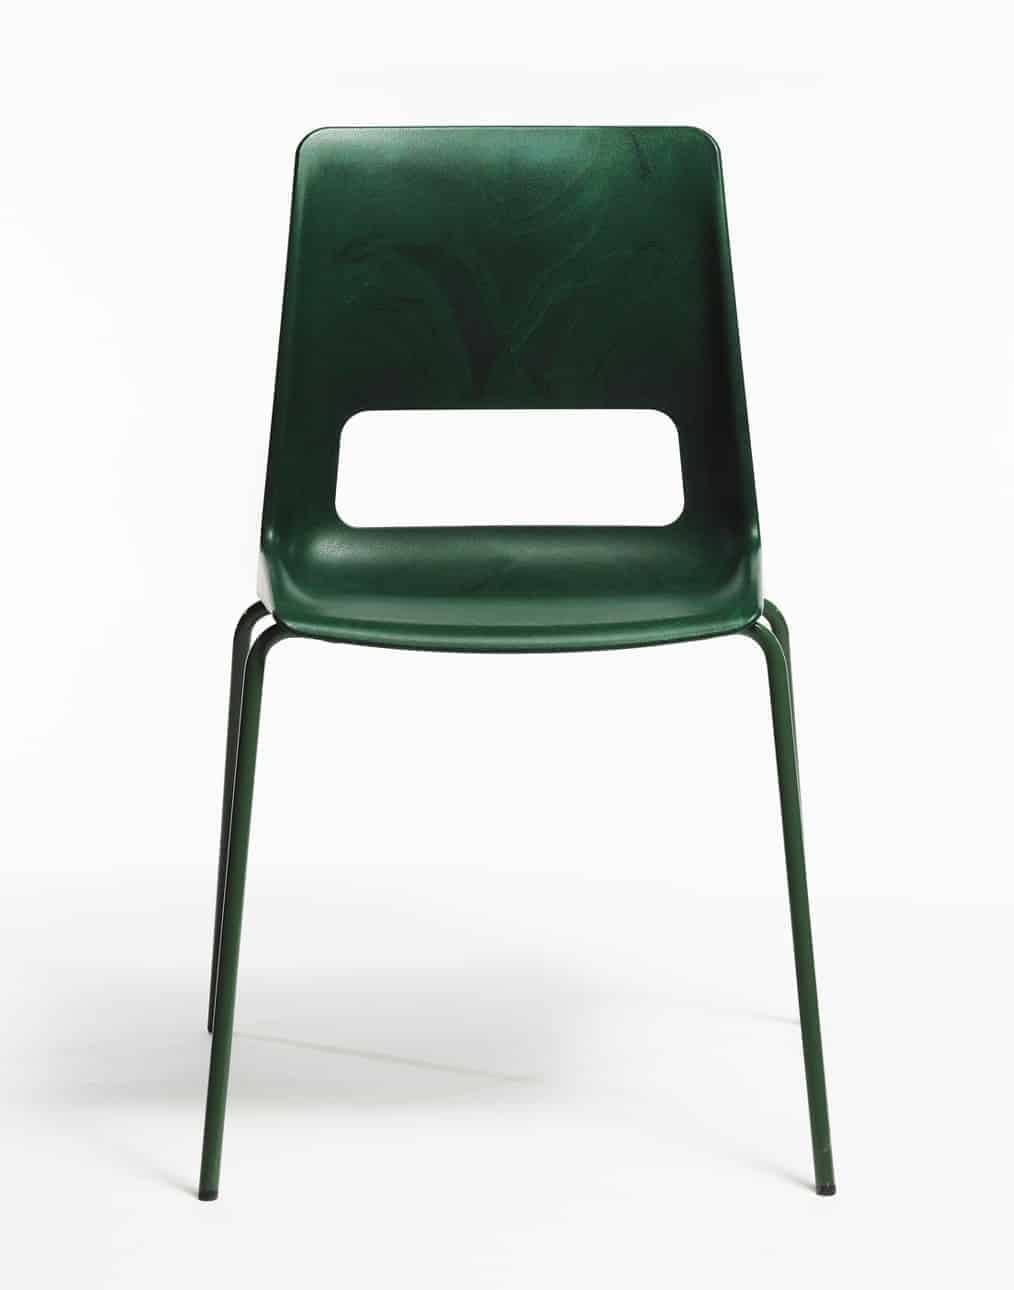 klassieke stoel van gerecycled plastic